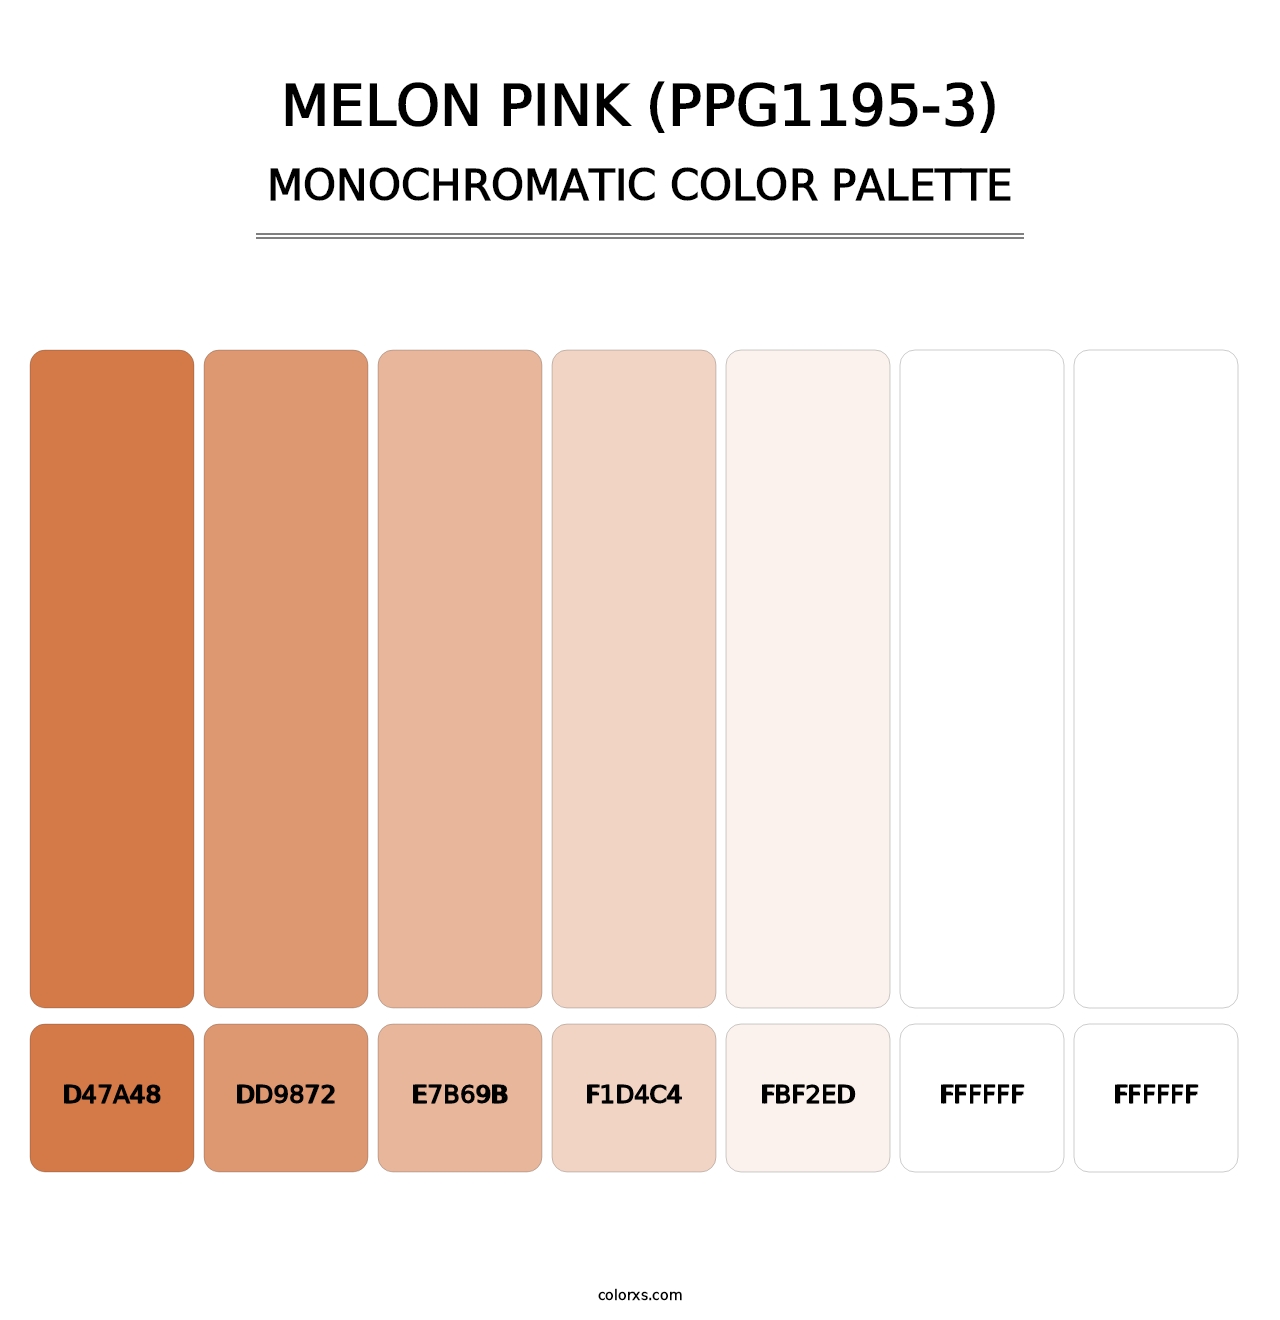 Melon Pink (PPG1195-3) - Monochromatic Color Palette